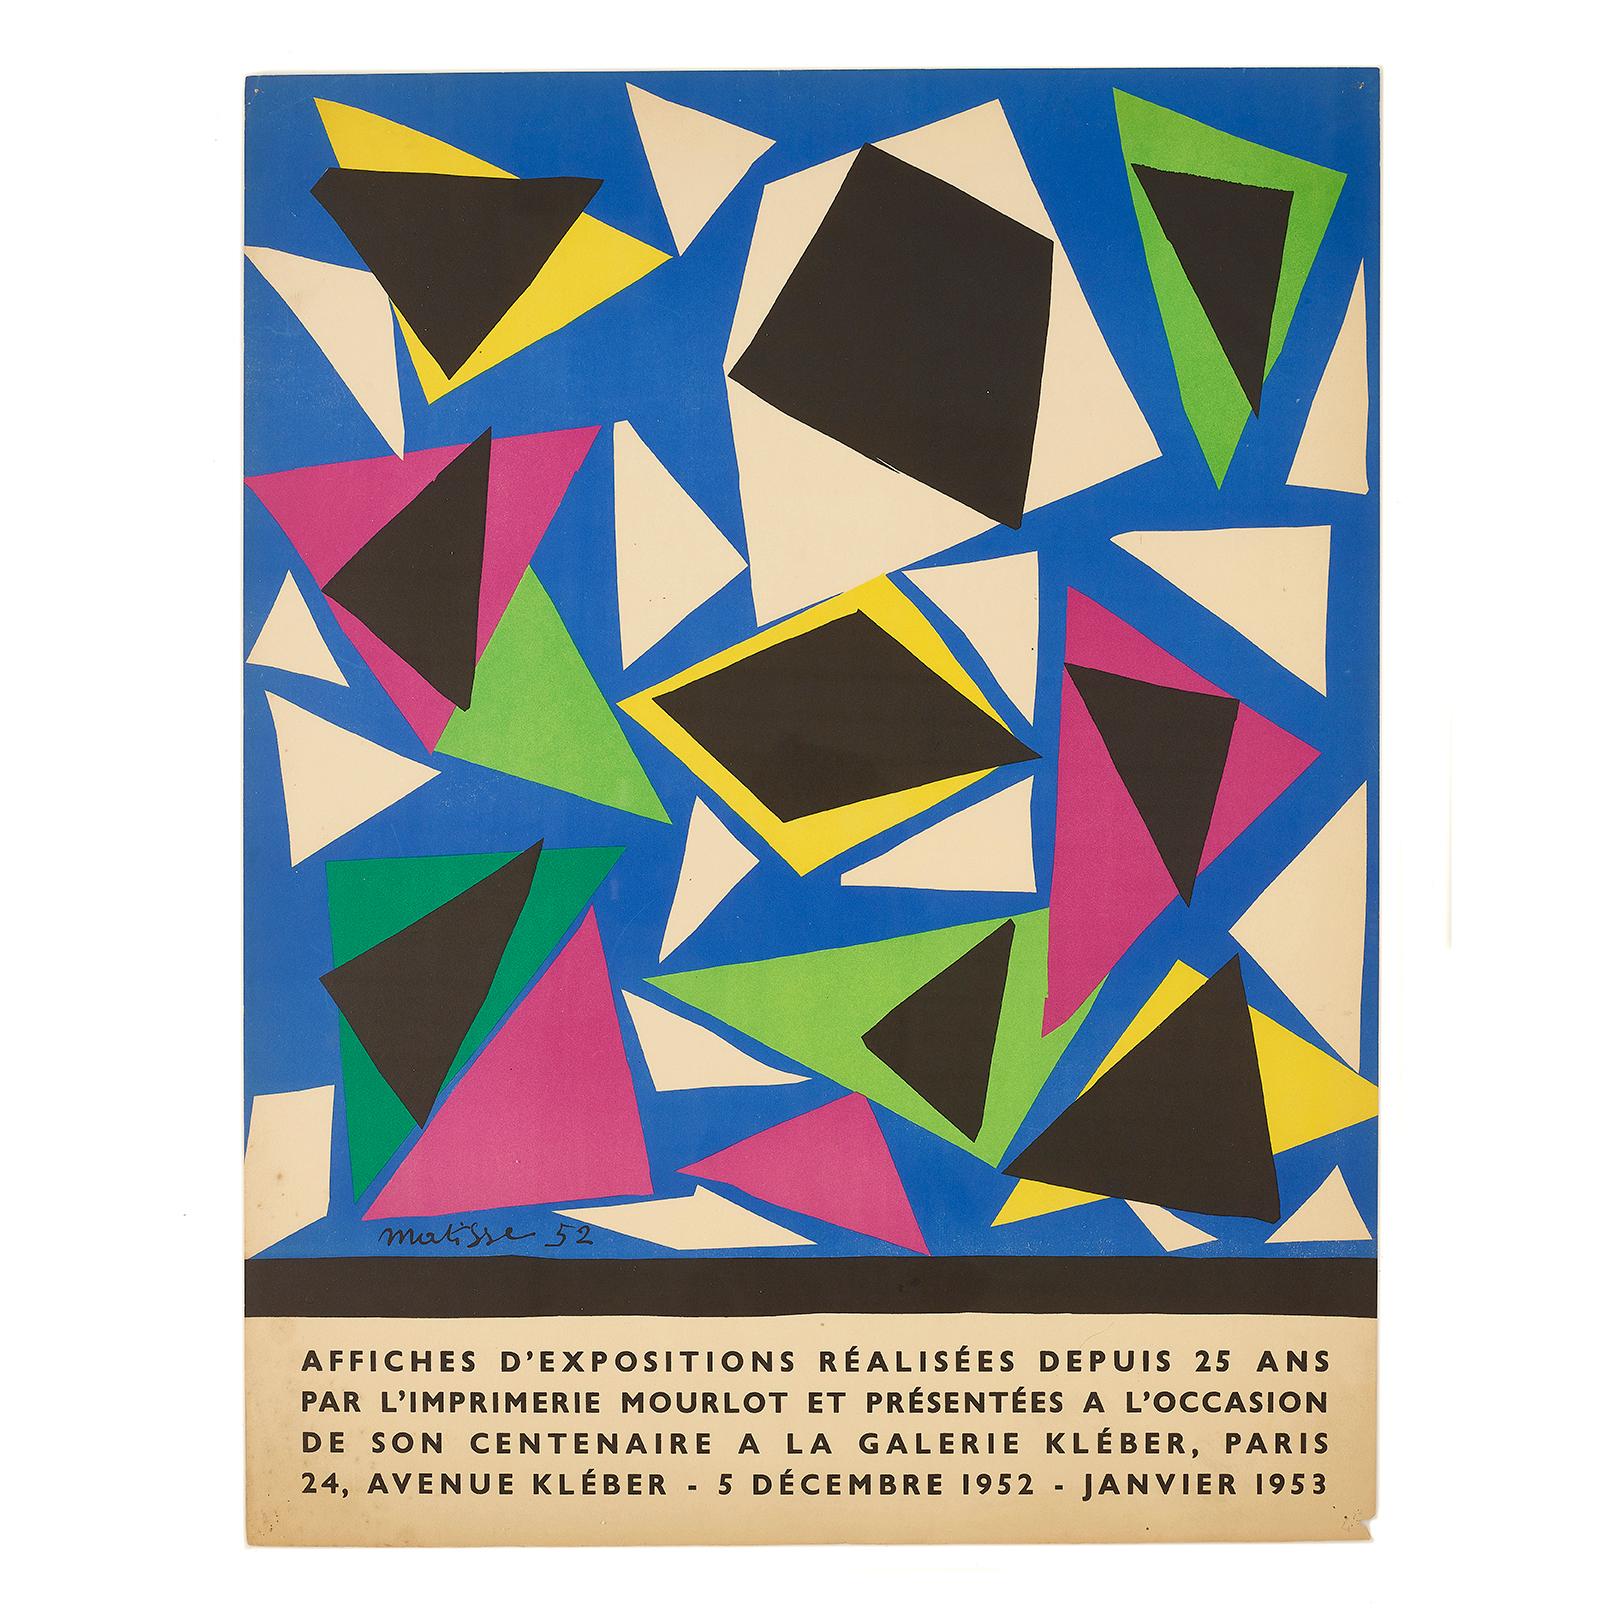 Affiches D'Expositions Réalis�ées Depuis 25 Ans par L'Imprimerie Mourlot, 1952 For Sale